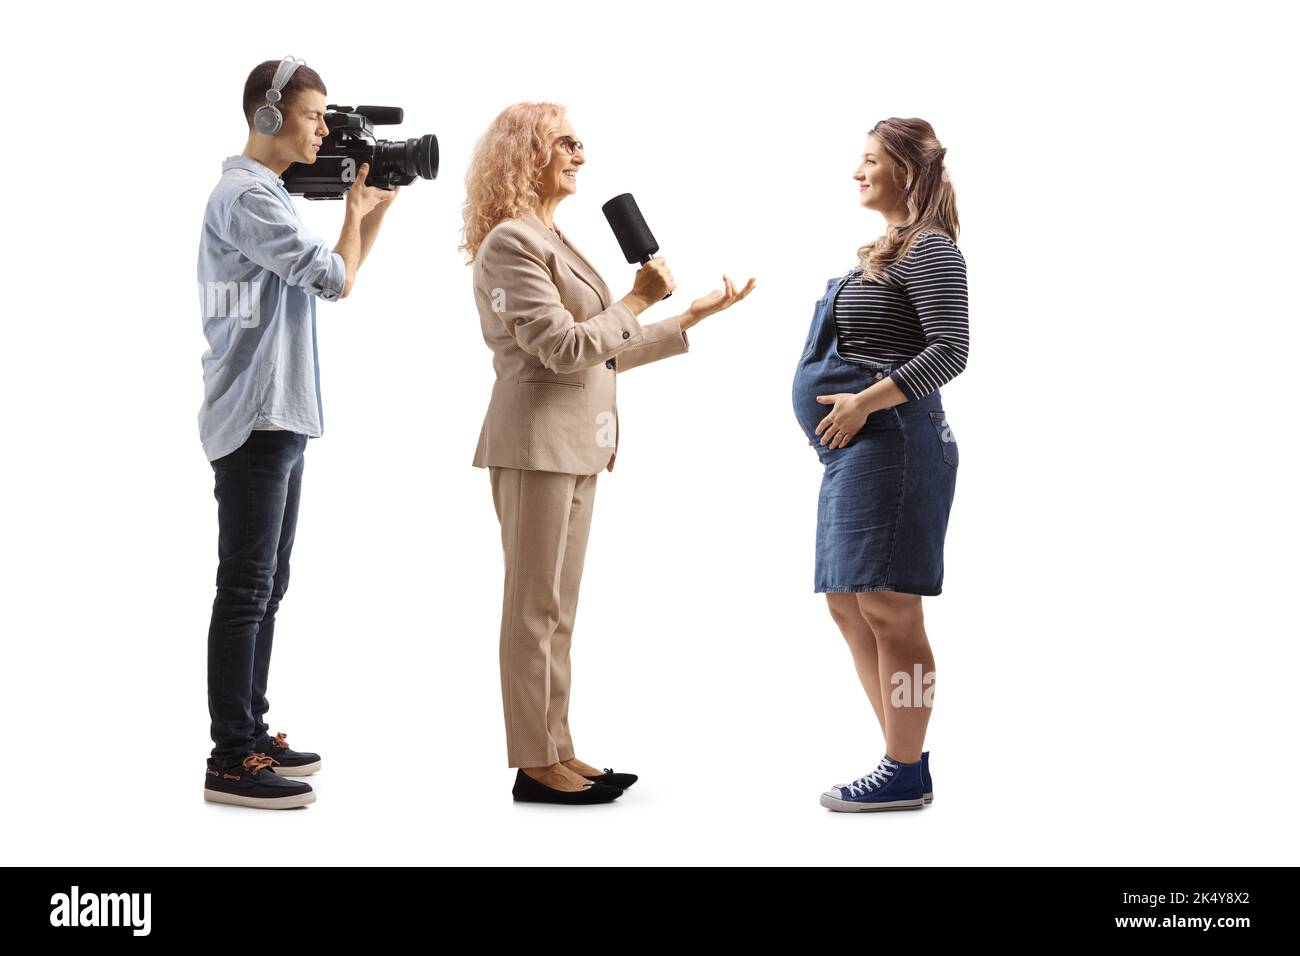 Femme journaliste interrogeant une femme enceinte et un homme de caméra, isolés sur fond blanc Banque D'Images